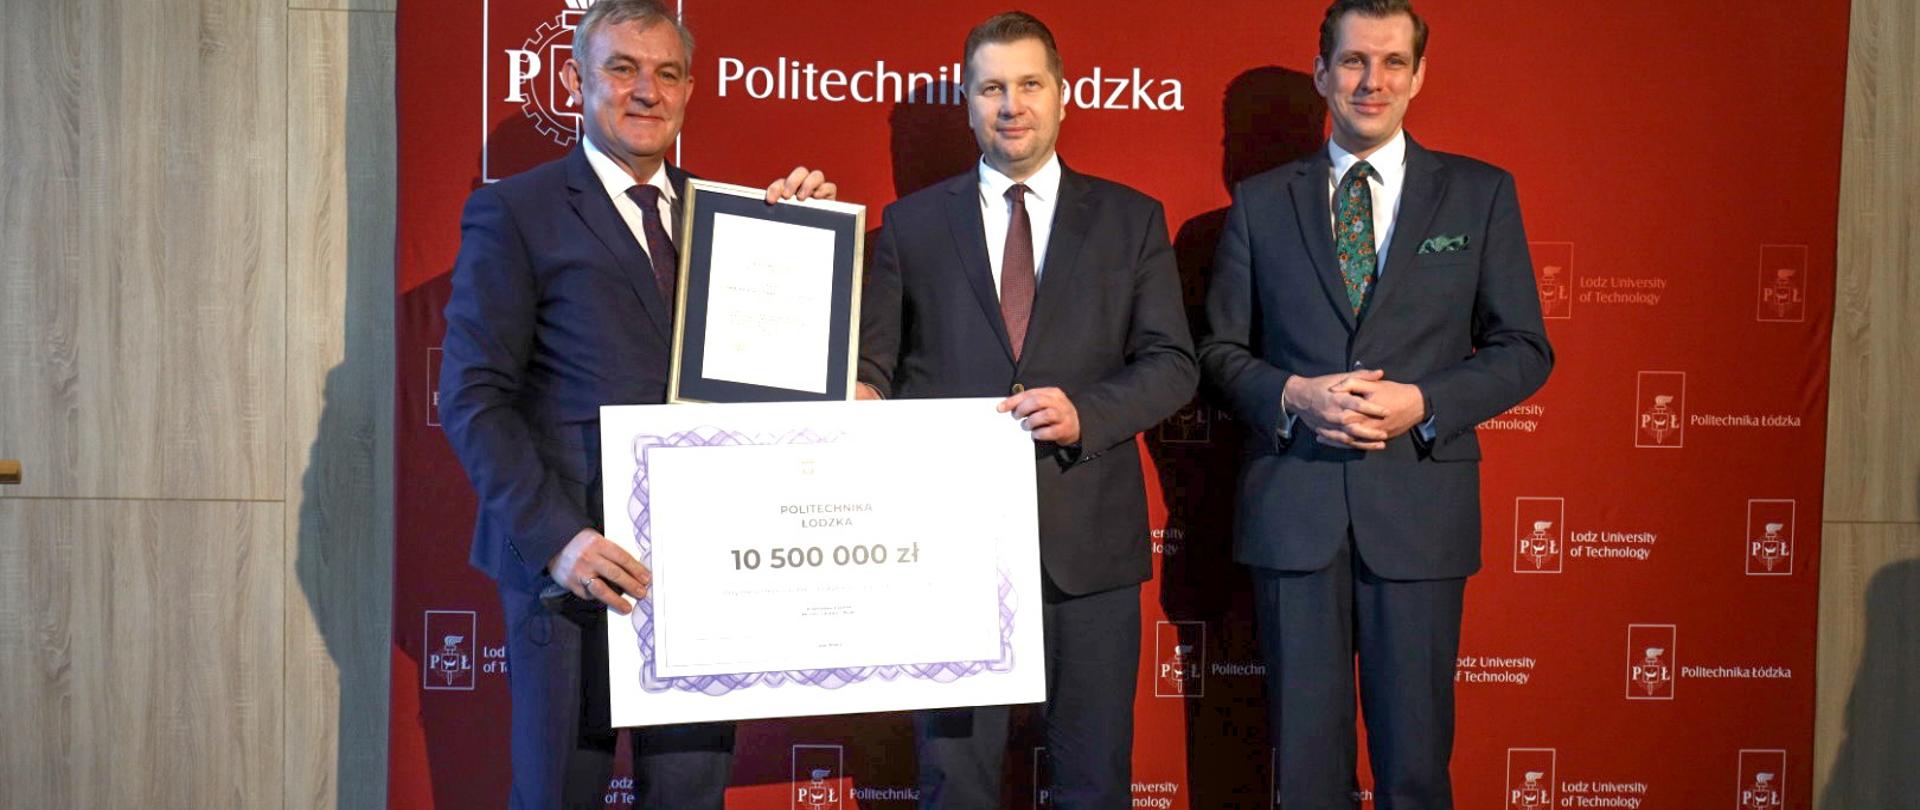 Minister Przemysław Czarnek pozuje do zdjęcia z czekiem oraz przedstawicielami Politechniki Łódzkiej, za nimi stoi baner z napisem Politechnika Łódzka.